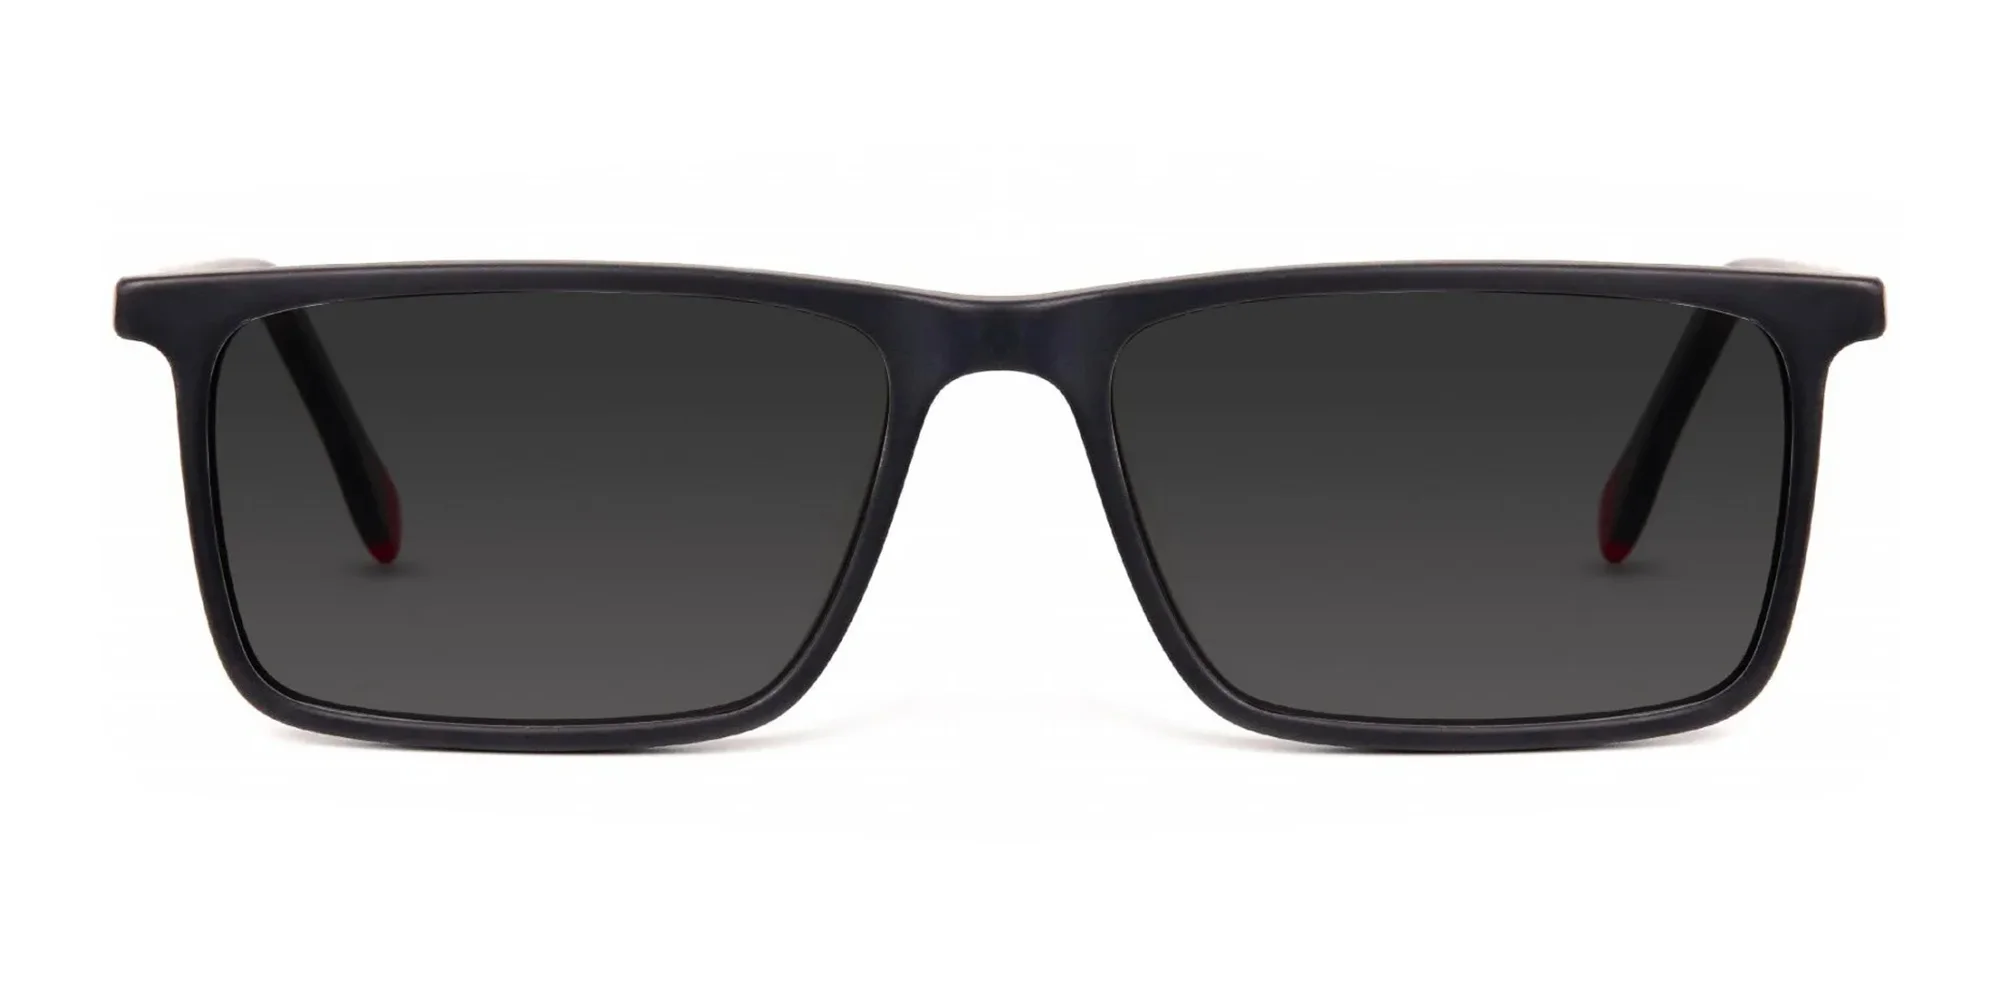 Chester 2-S - Grey Lens-Sunglasses For Men & Women | Specscart